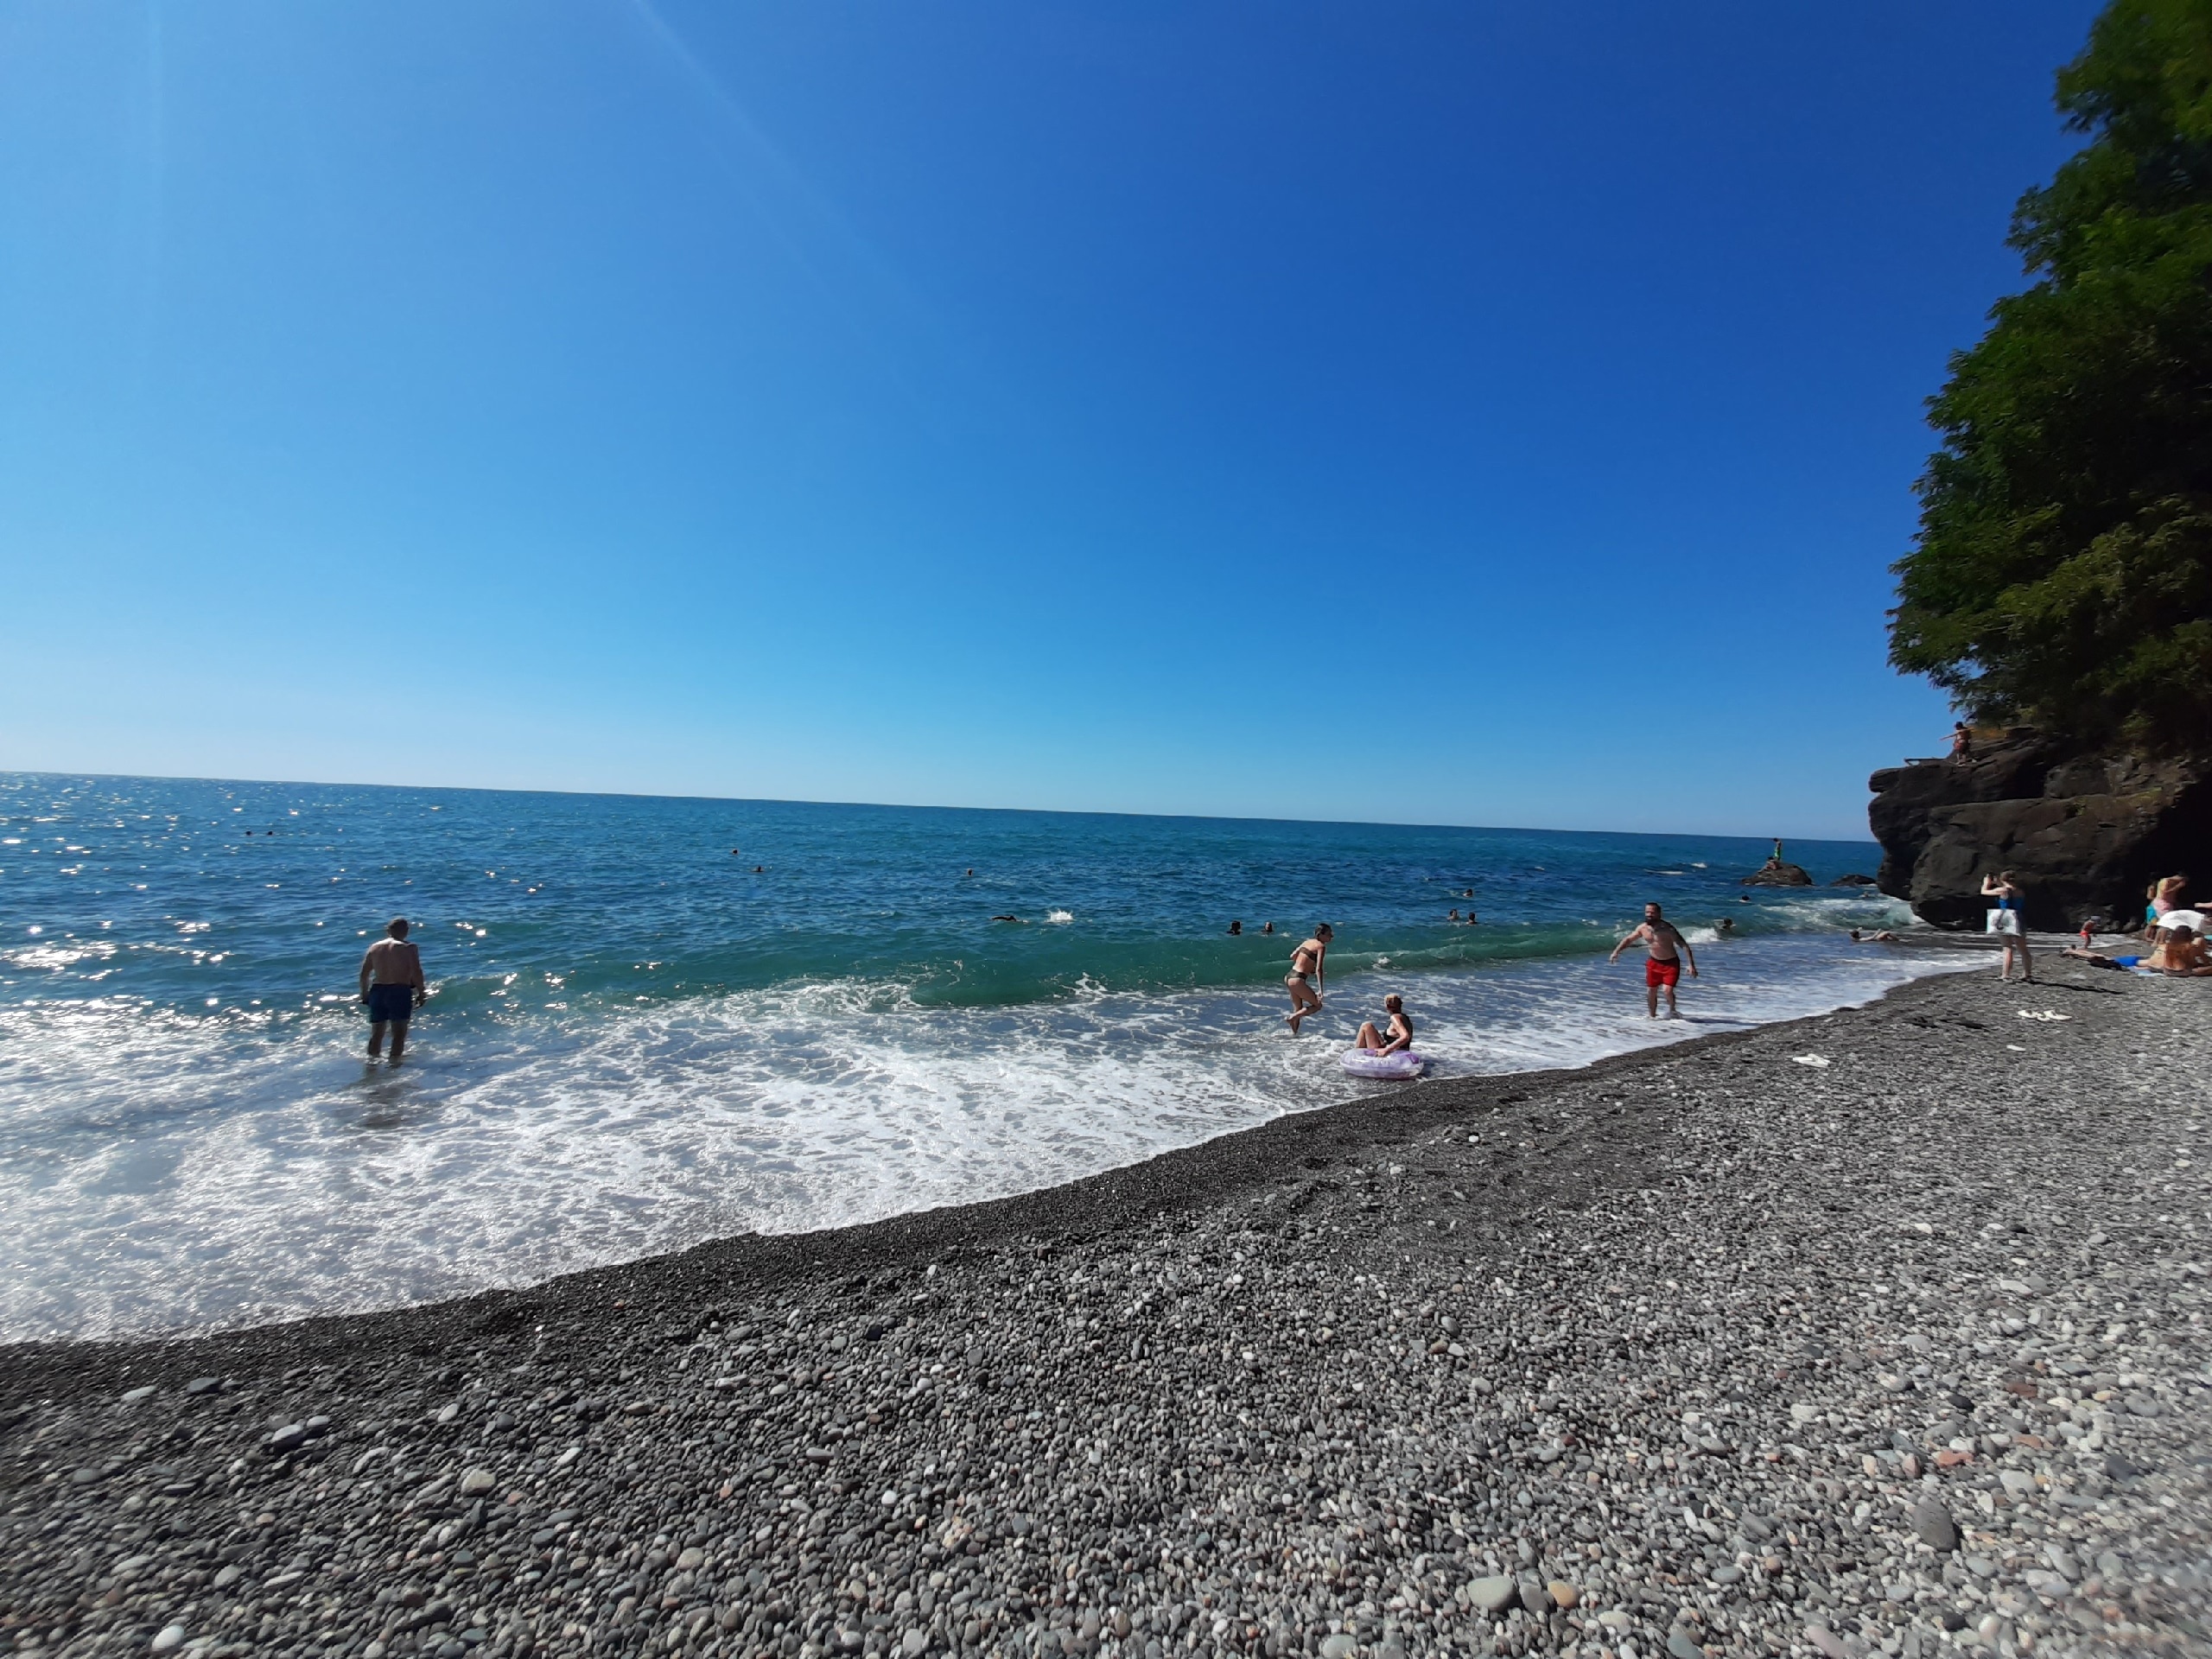 Теперь нельзя: туристам запретили купаться в Черном море